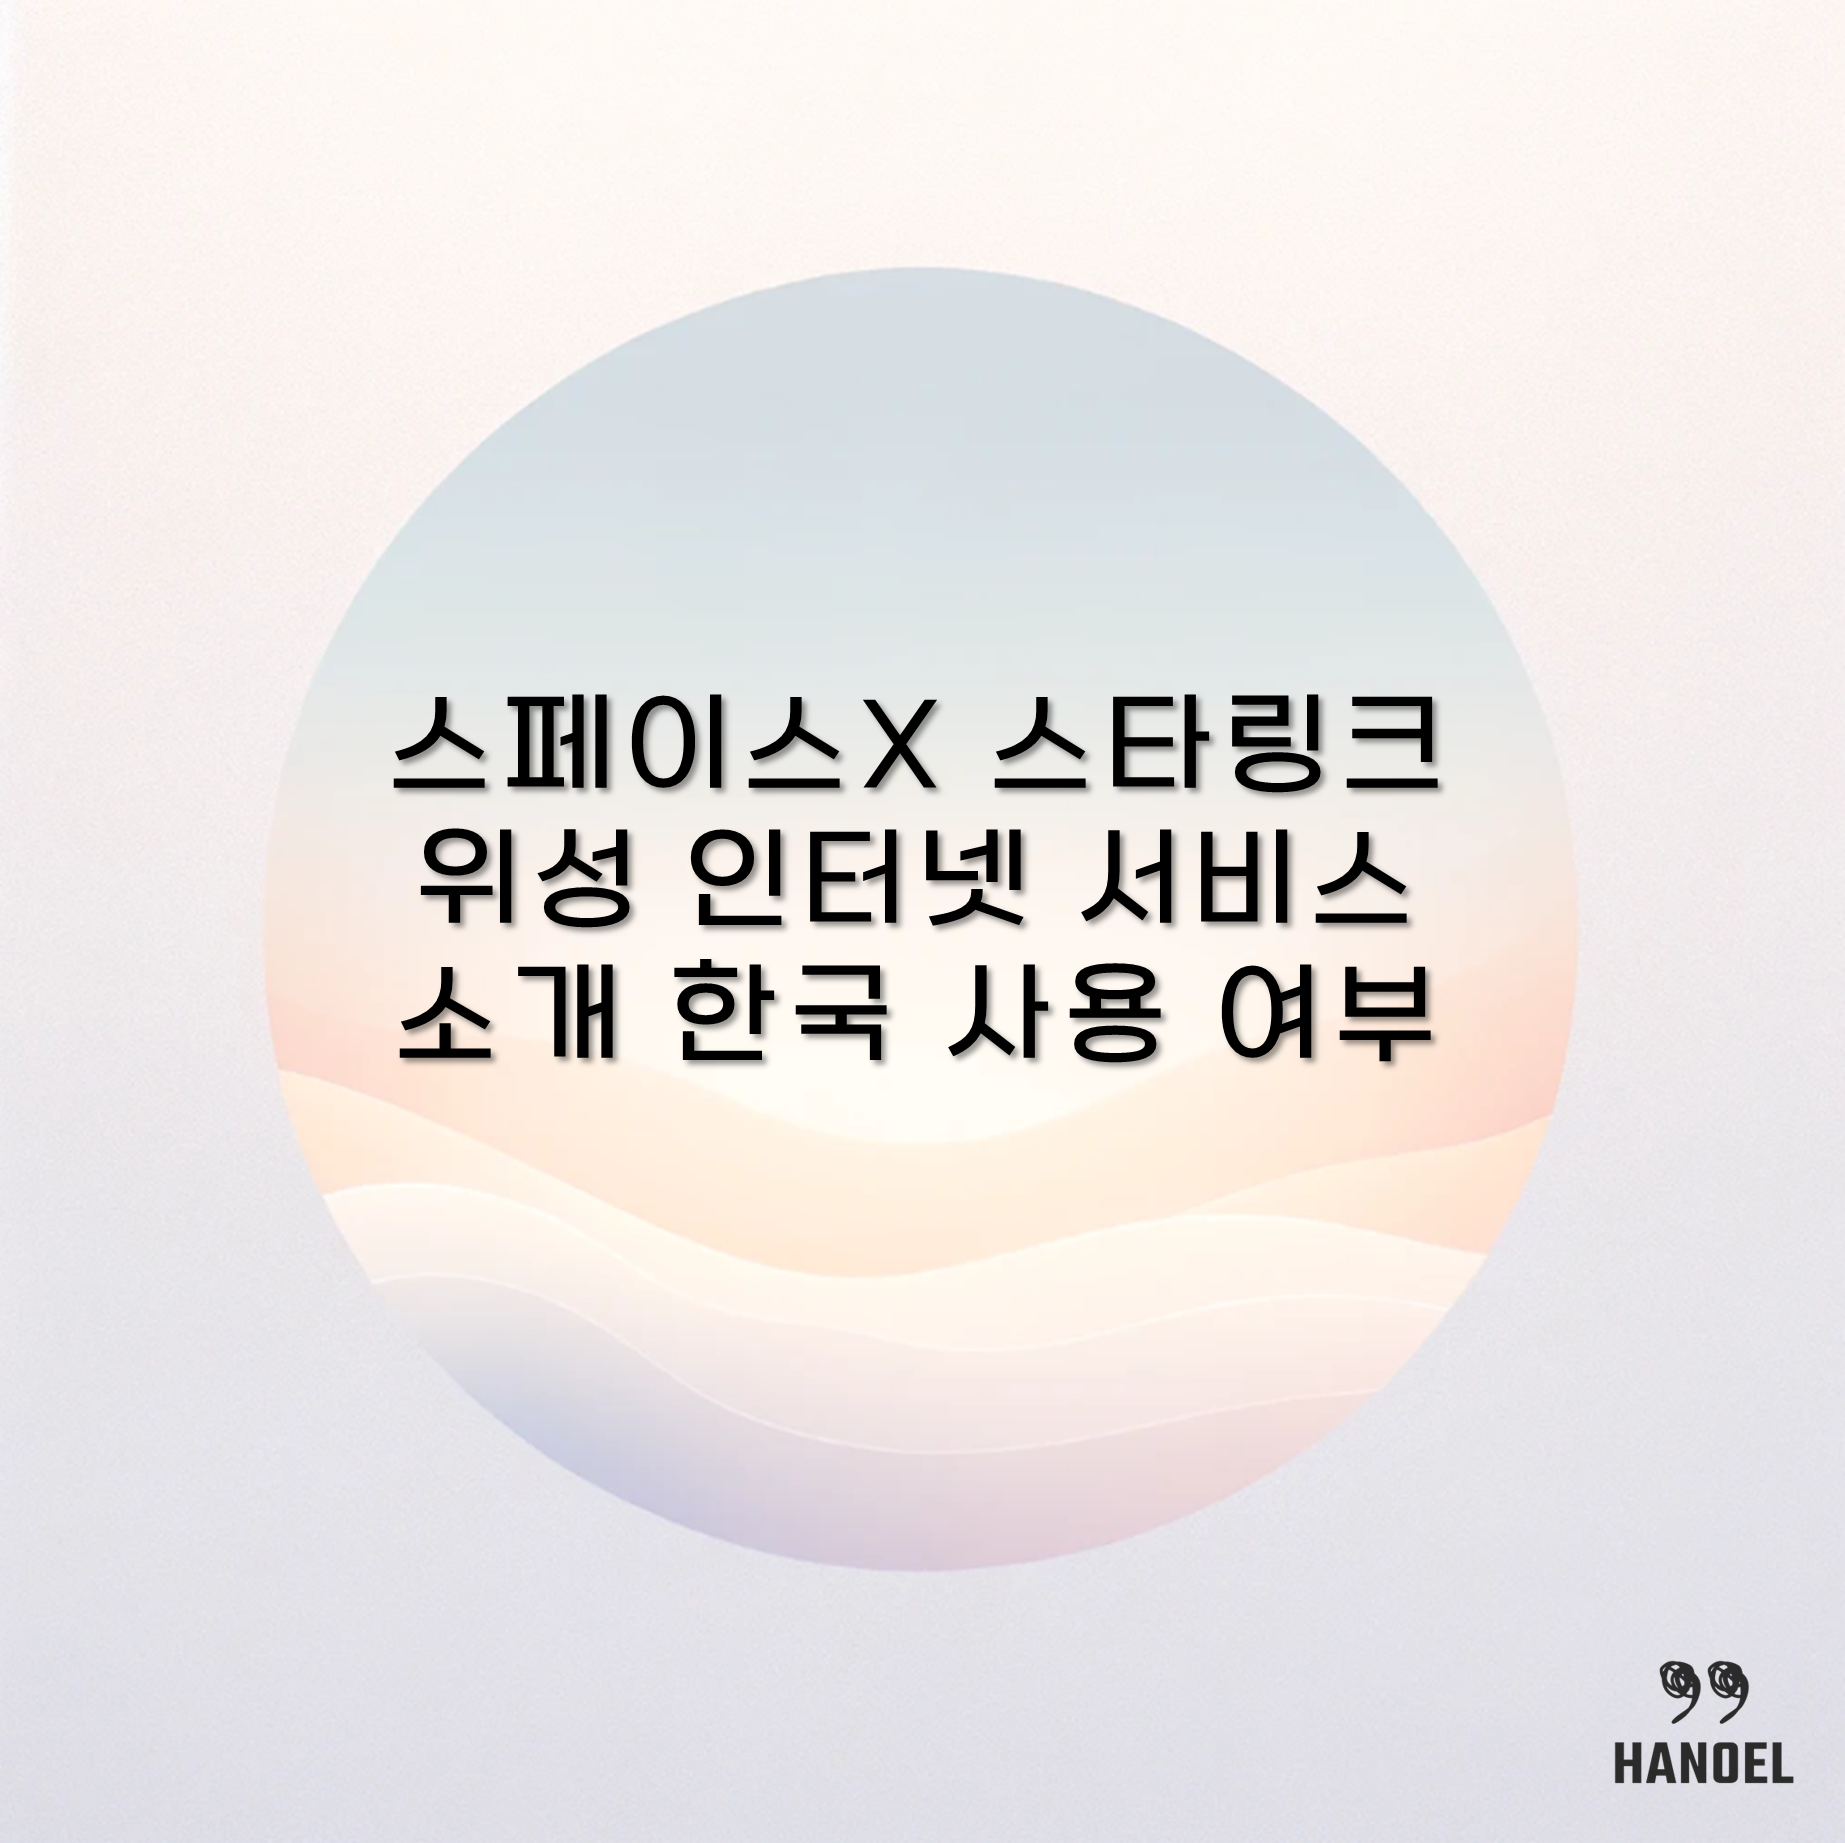 스페이스X 스타링크 위성 인터넷 서비스 소개 한국 사용 여부